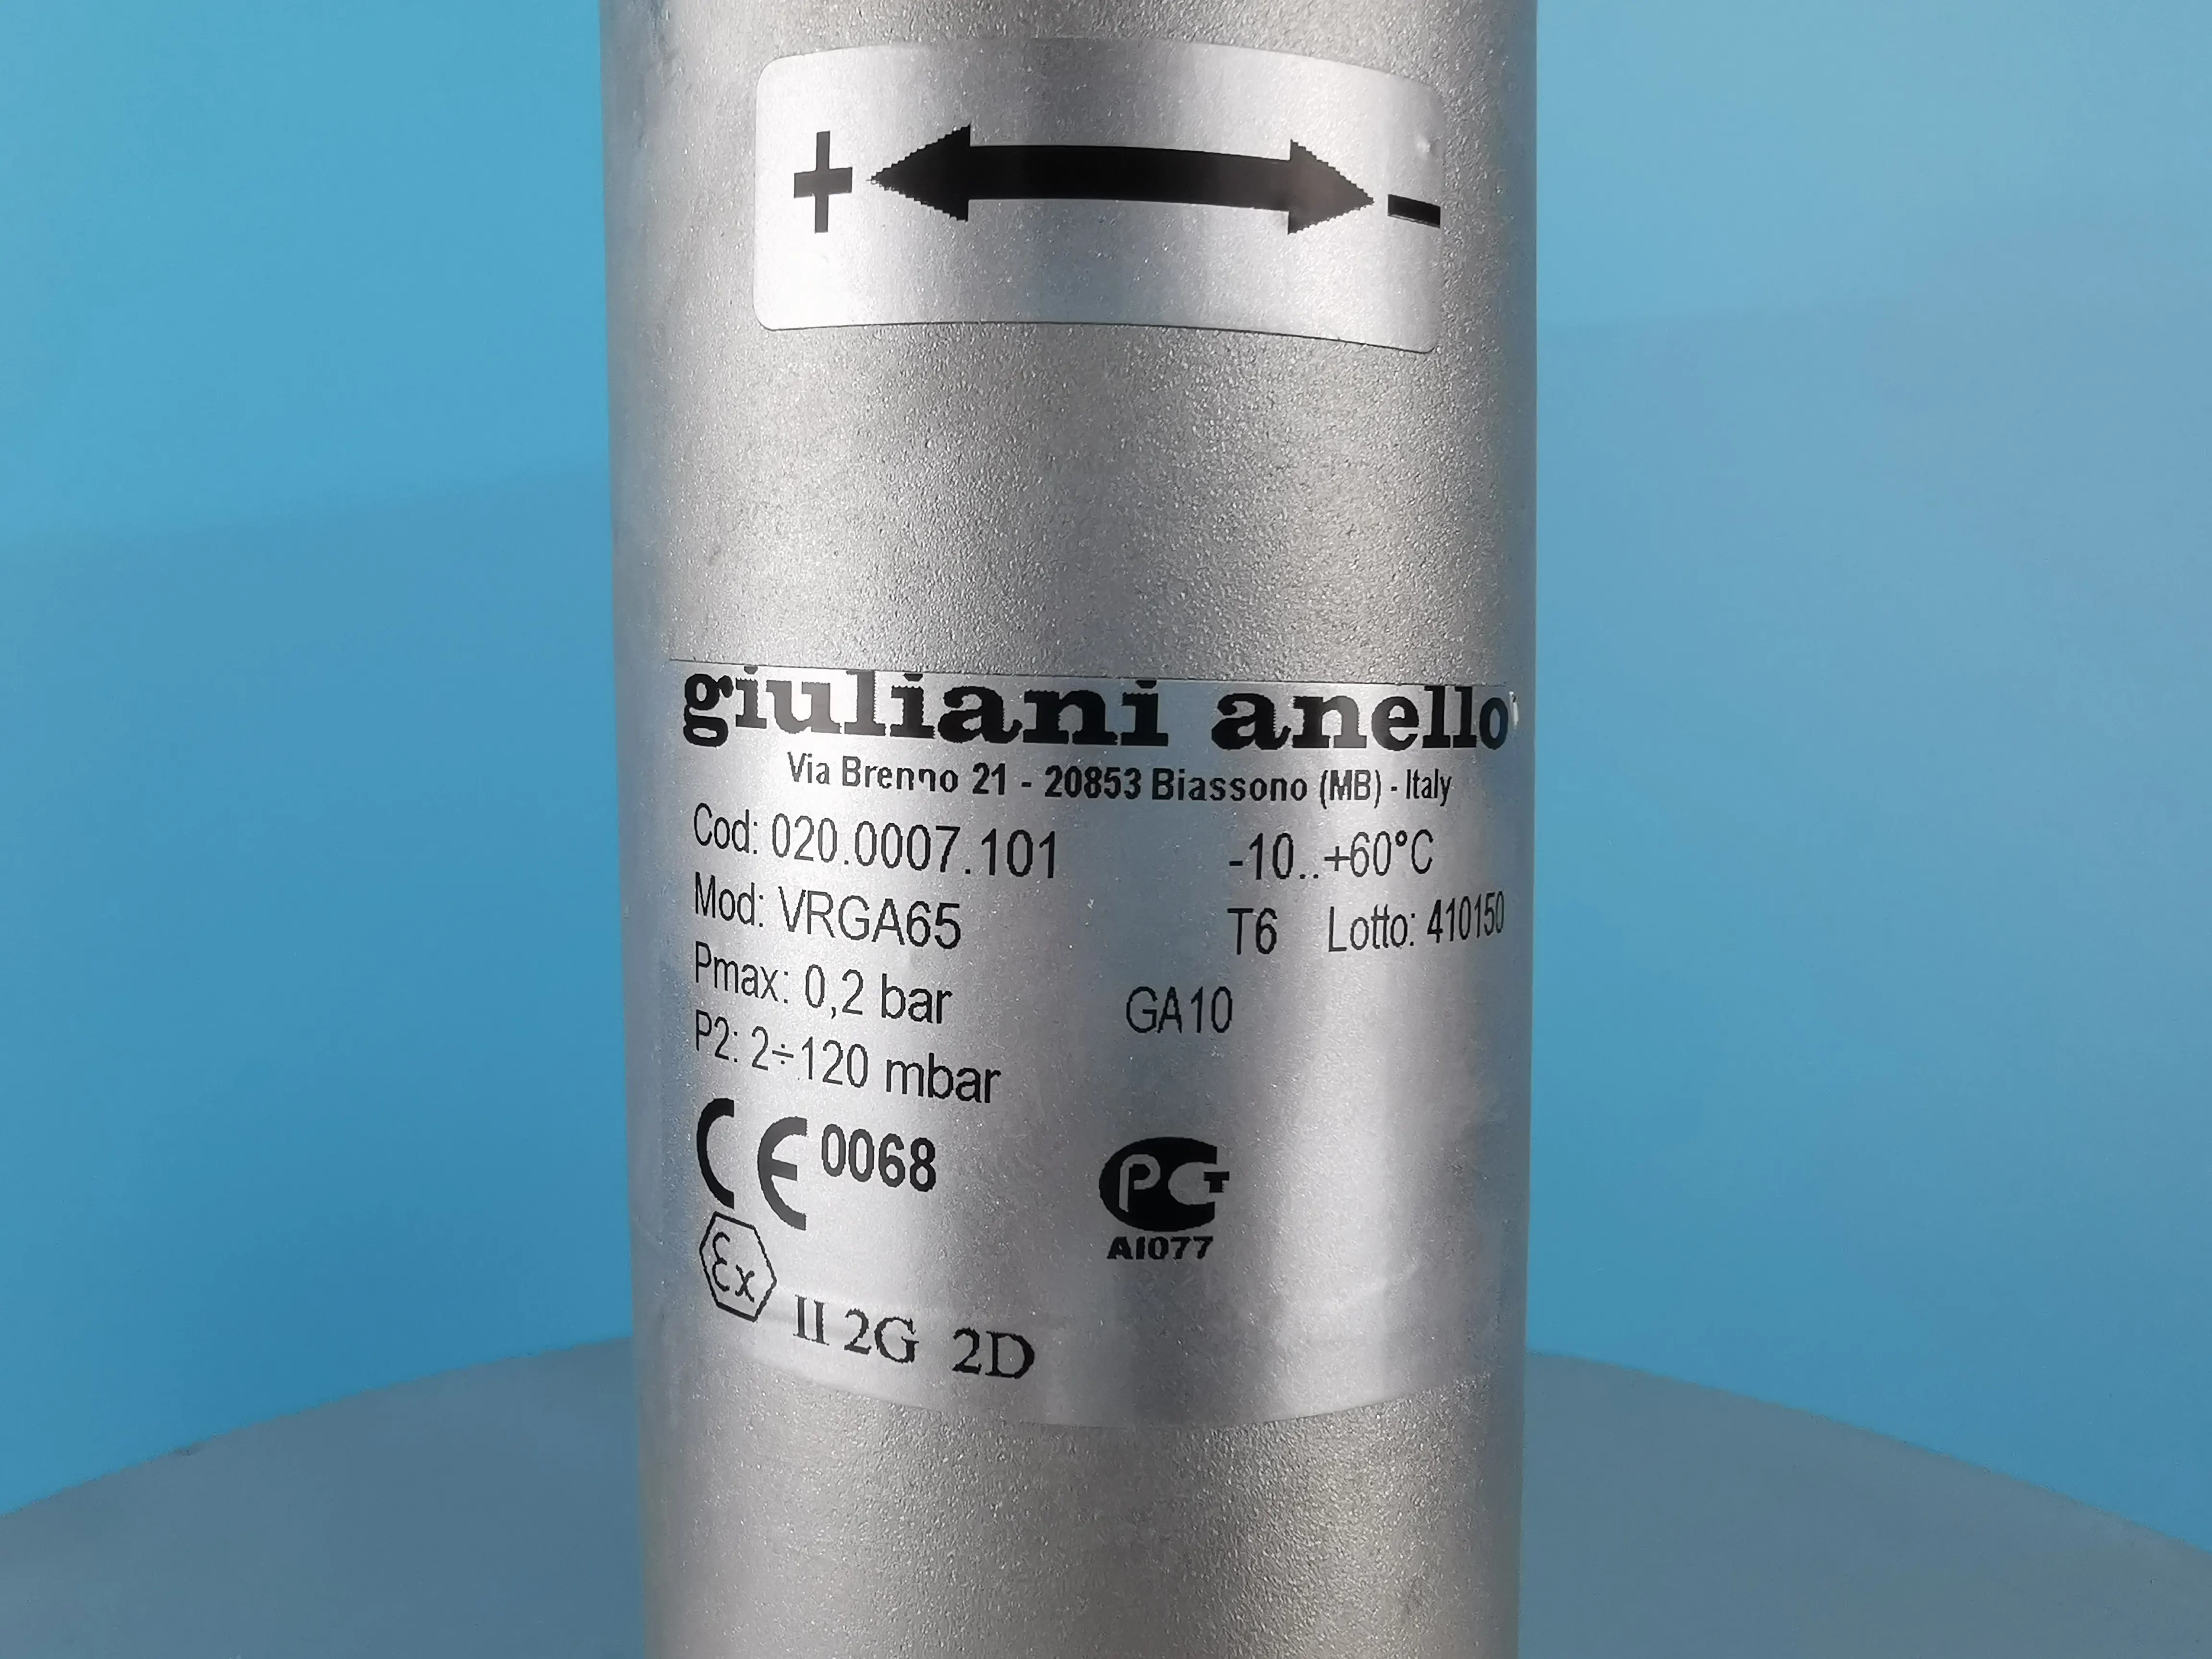 줄리아니 아넬로 VAVR65 공기 연료 비례 밸브 가스 고압 전기 스테인레스 스틸 가스 비례 밸브